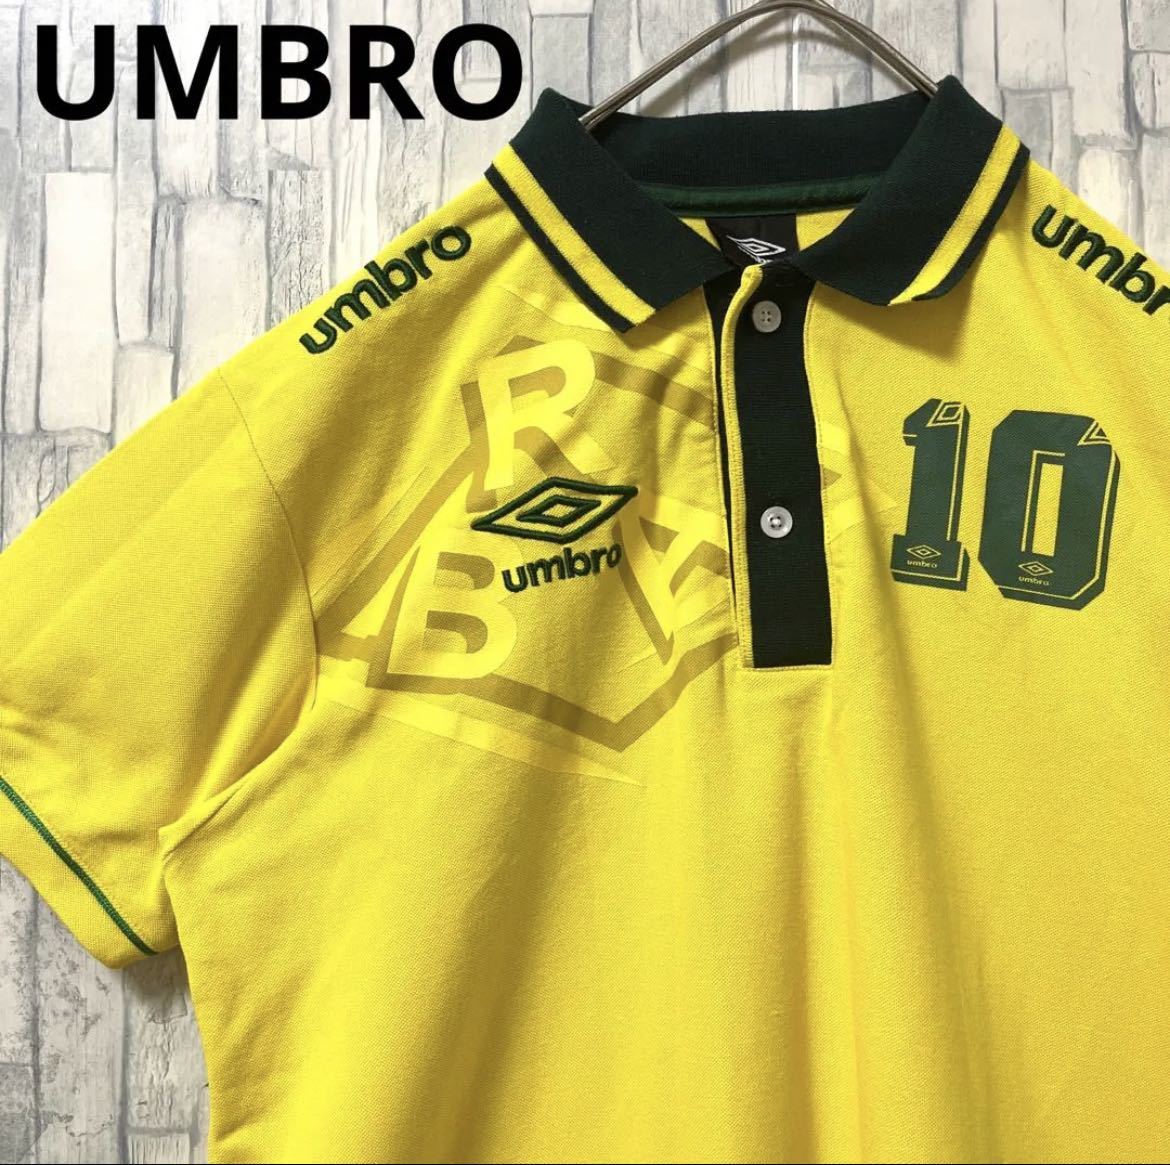 UMBRO アンブロ サッカー ブラジル代表 ポロシャツ サイズL イエロー 半袖 刺繍ロゴ シンプルロゴ デサント 鹿の子 送料無料_画像1